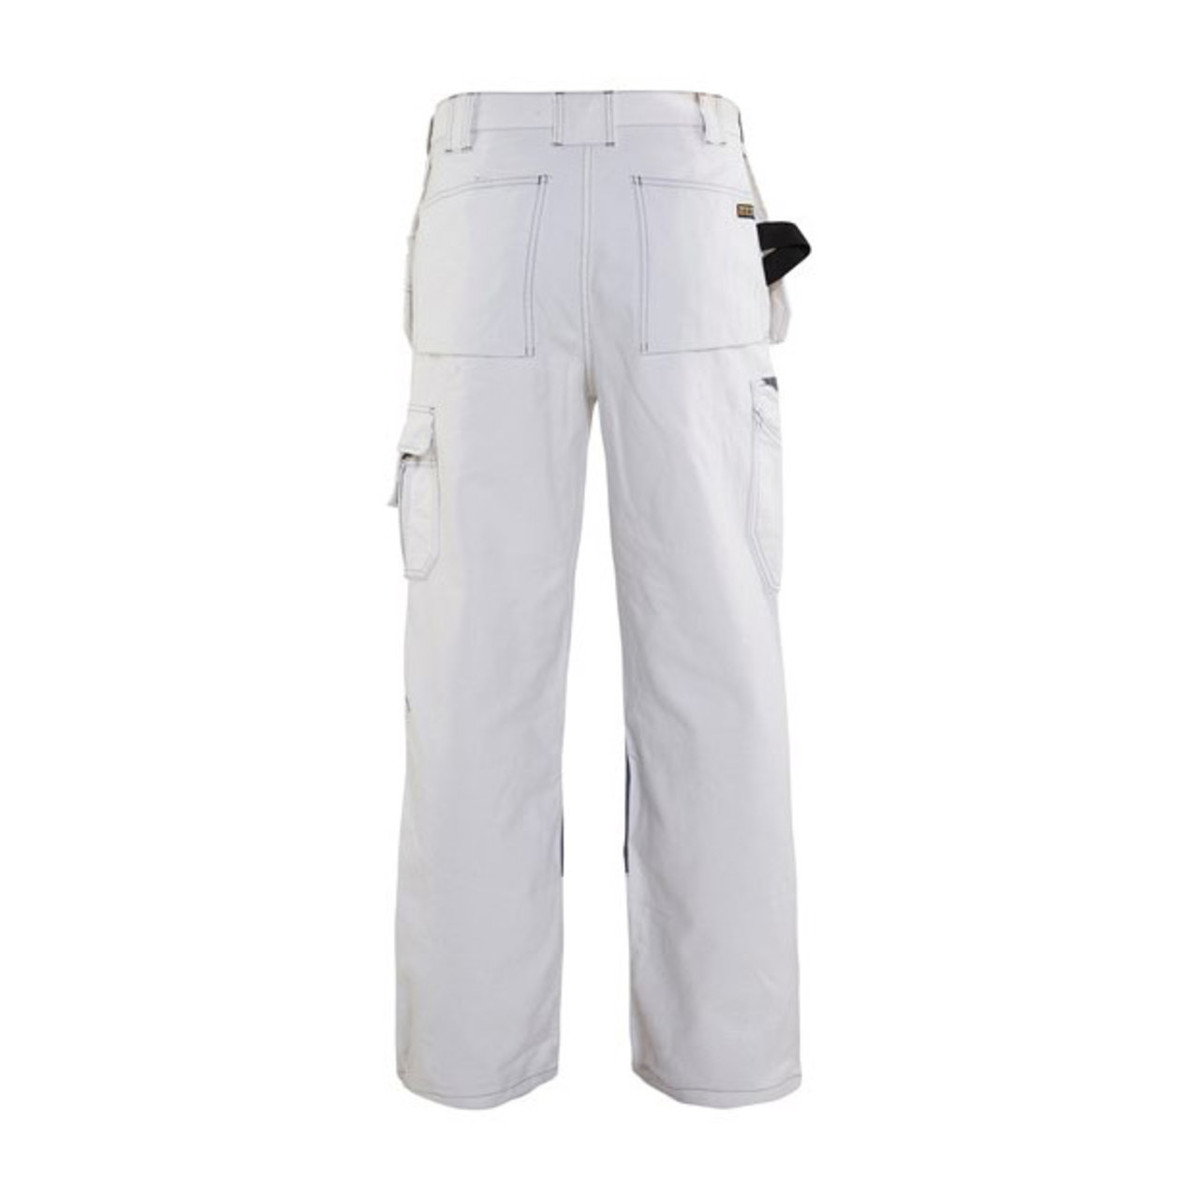 Amazon.com: Blaklader Brawny Work Pants - No Utility Pockets Antique Khaki  40 32: Work Utility Pants: Clothing, Shoes & Jewelry